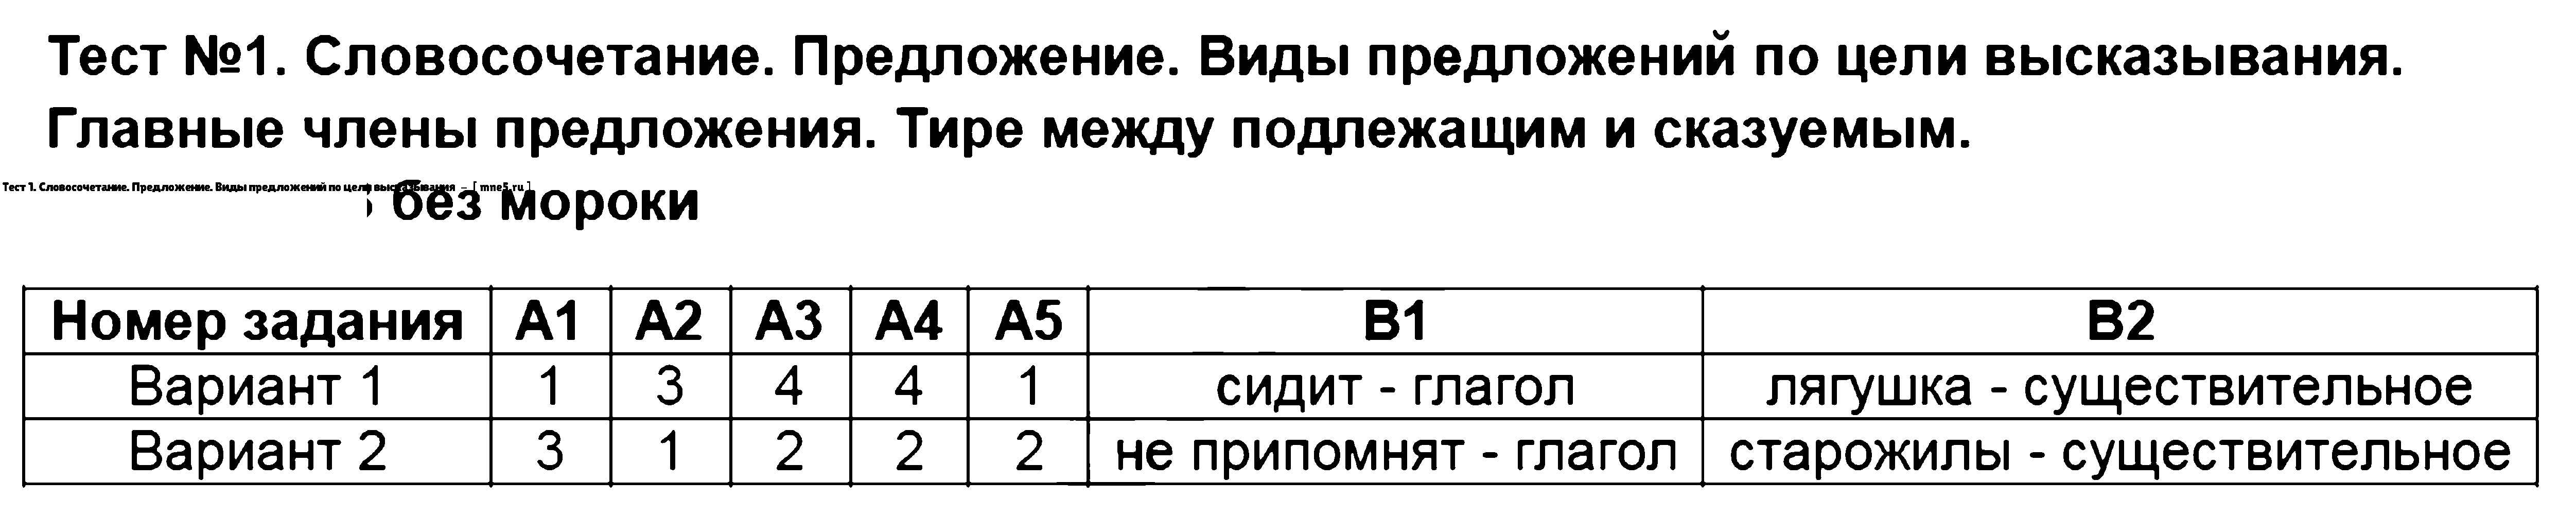 ГДЗ Русский язык 5 класс - Тест 1. Словосочетание. Предложение. Виды предложений по цели высказывания